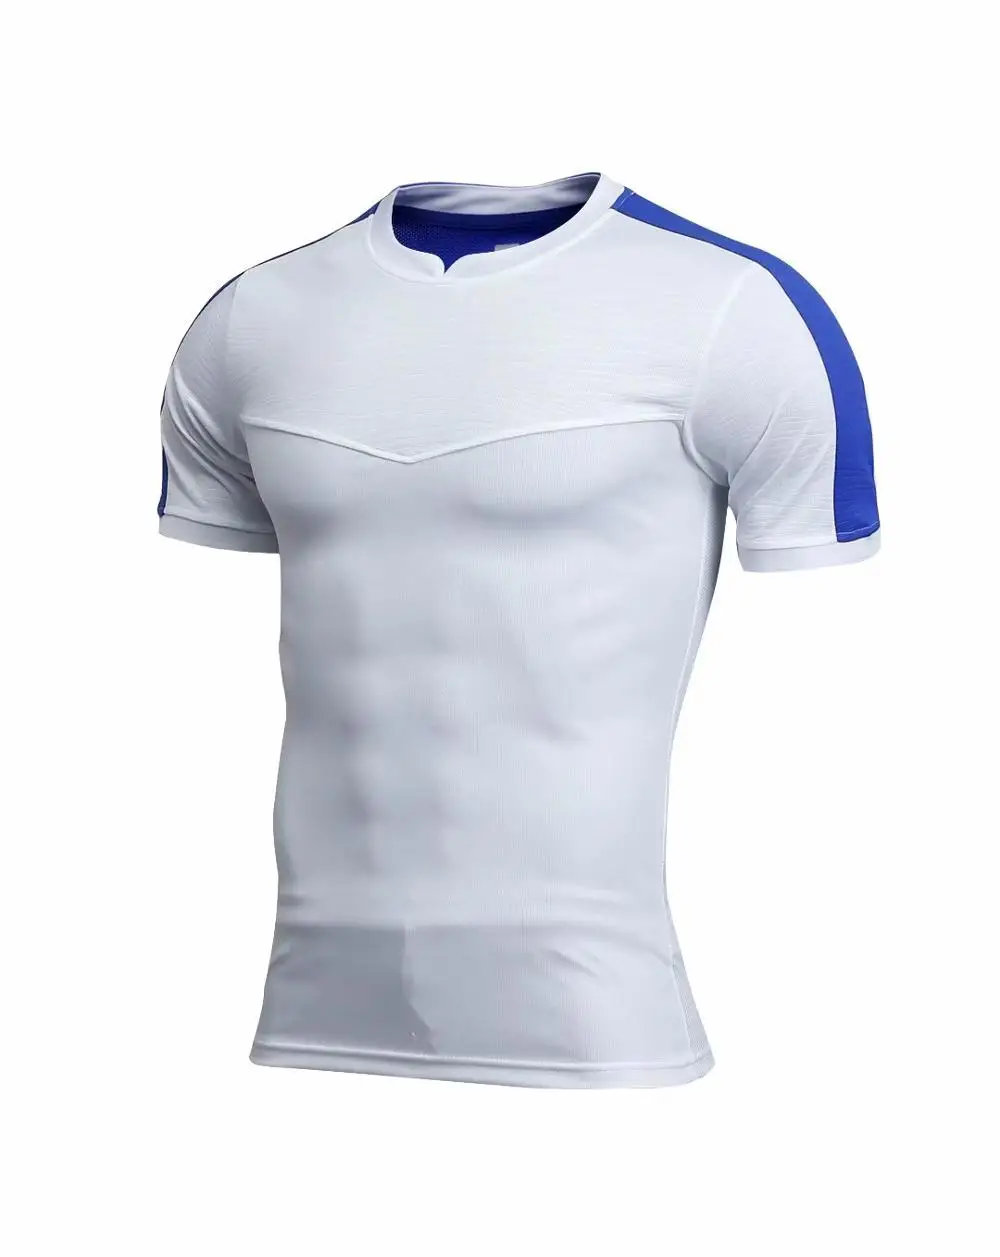 Мужские комплекты спортивной одежды футбол Джерси для бега и leeve тренировочная одежда спортивные наборы ColorJersey - Цвет: Другое